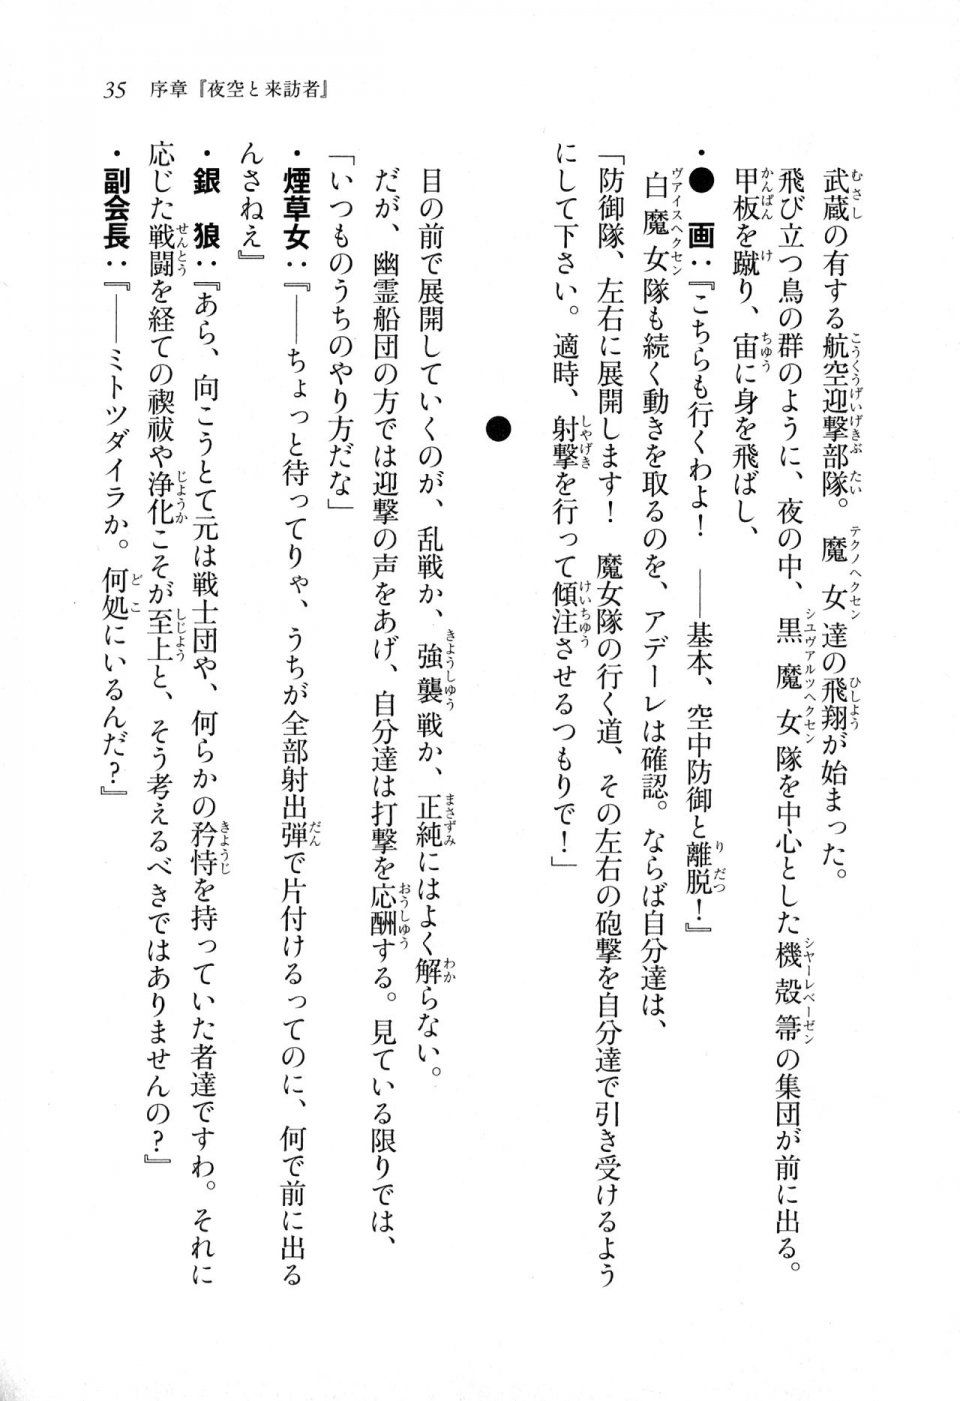 Kyoukai Senjou no Horizon LN Sidestory Vol 1 - Photo #34